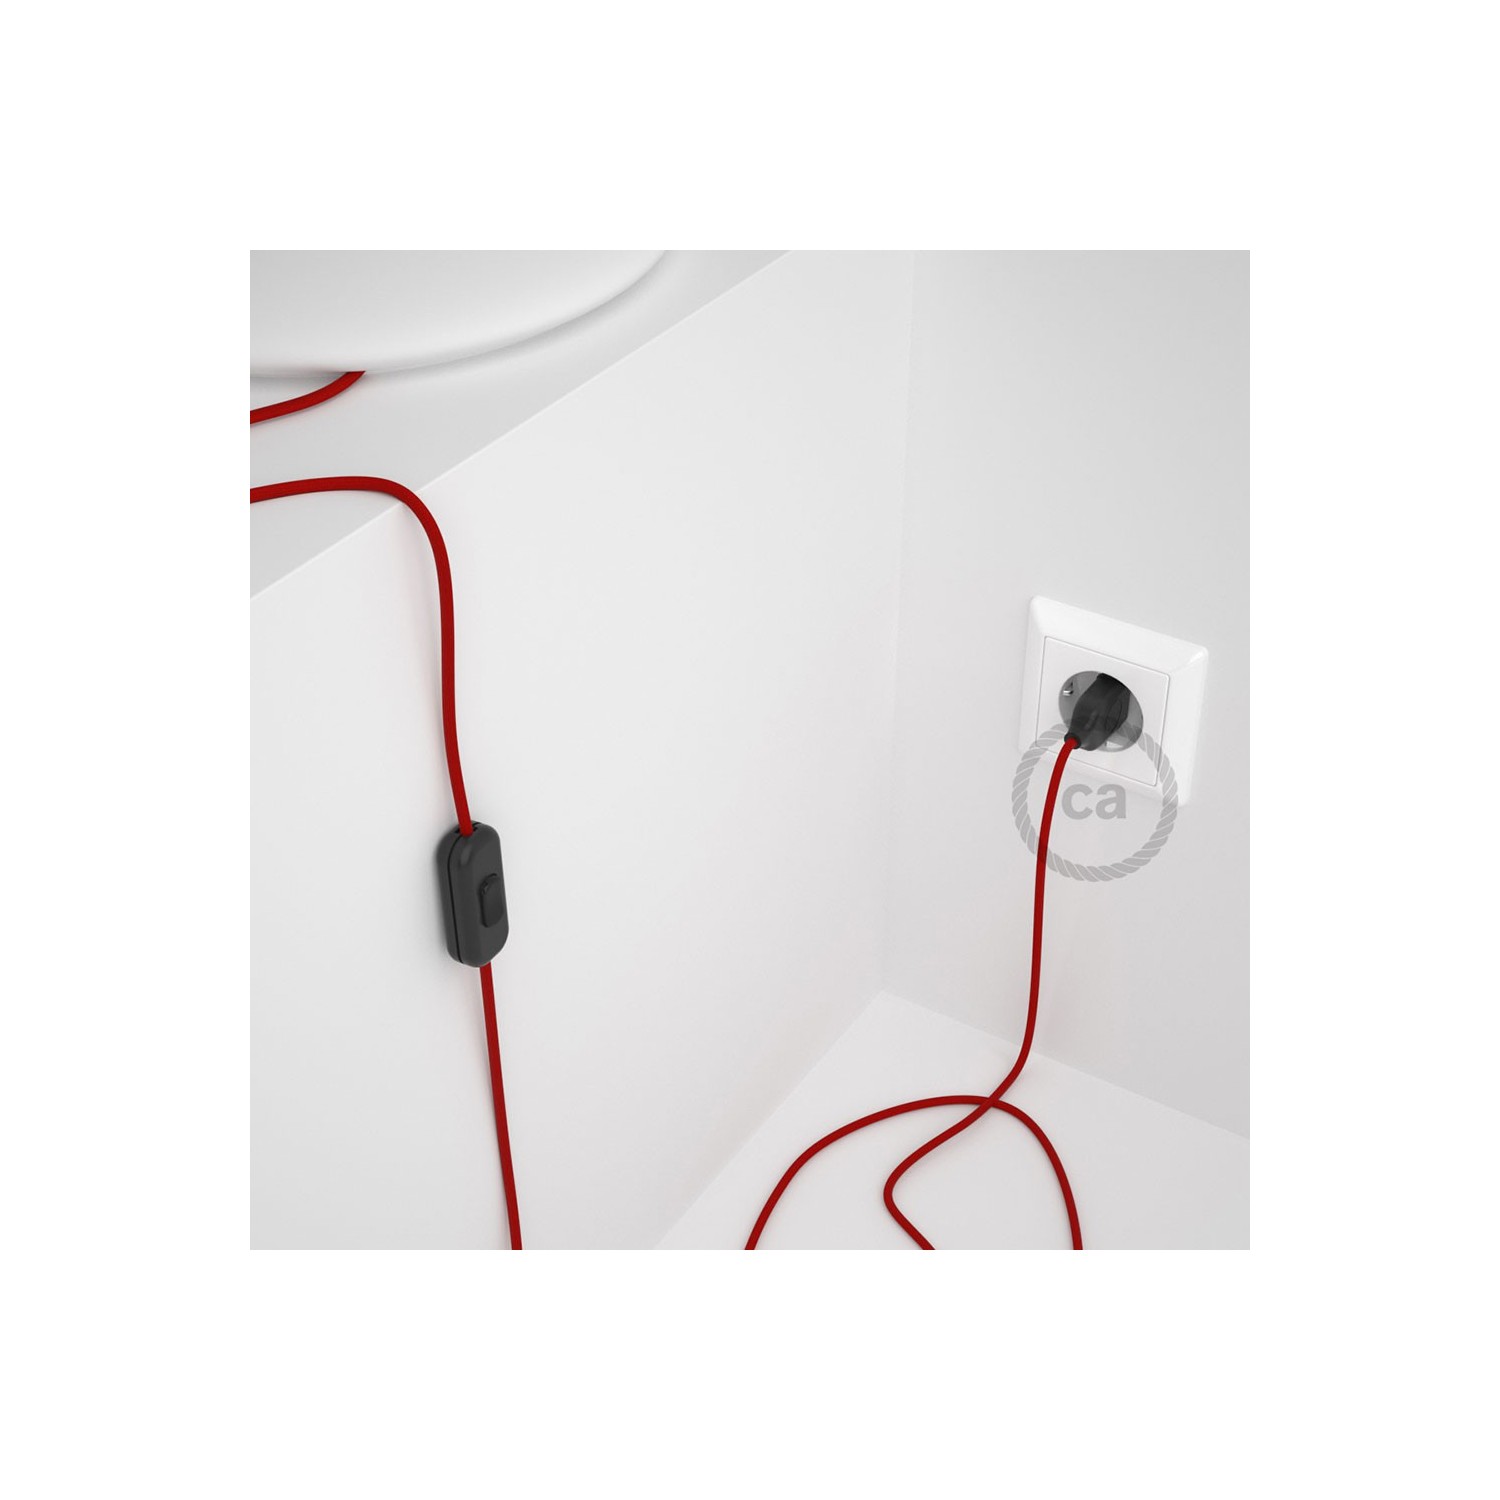 Napájací kábel pre stolnú lampu, RM09 Červený hodvábny 1,80 m. Vyberte si farbu zástrčky a vypínača.